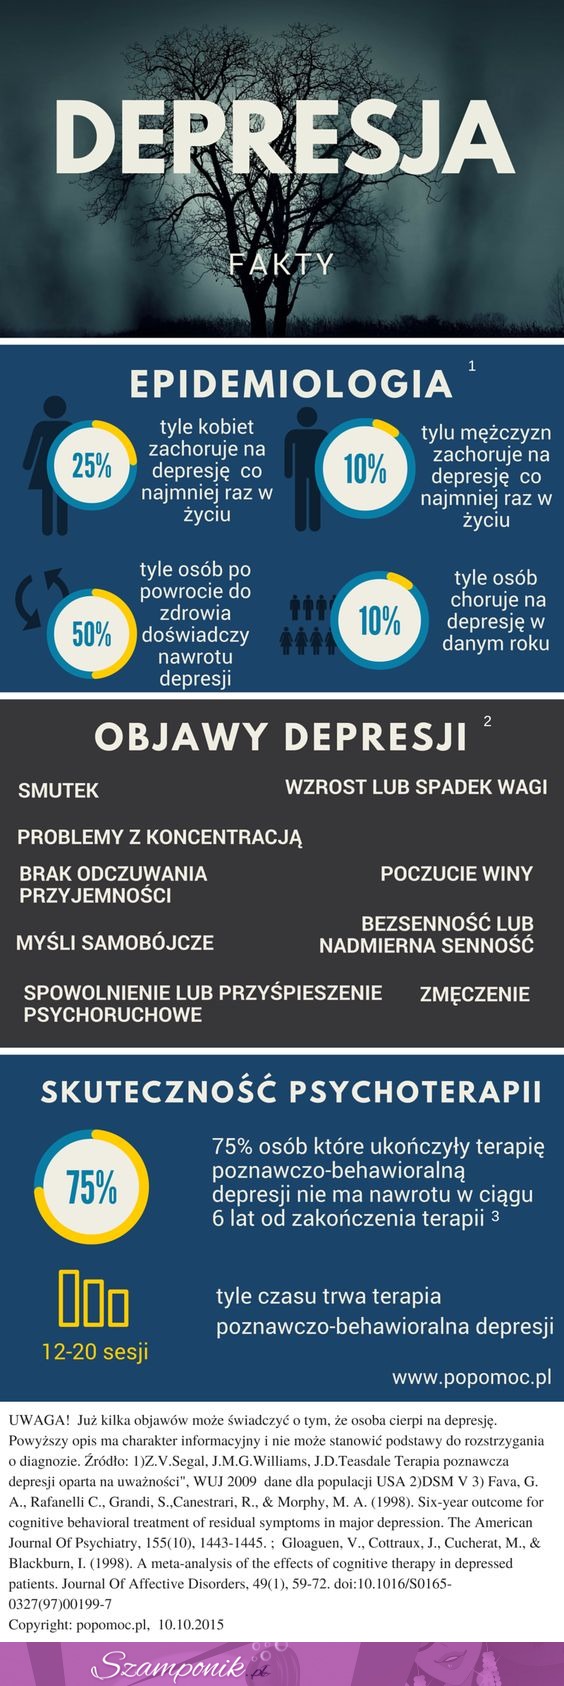 Kilka faktów na temat depresji, nie bądź obojętny!